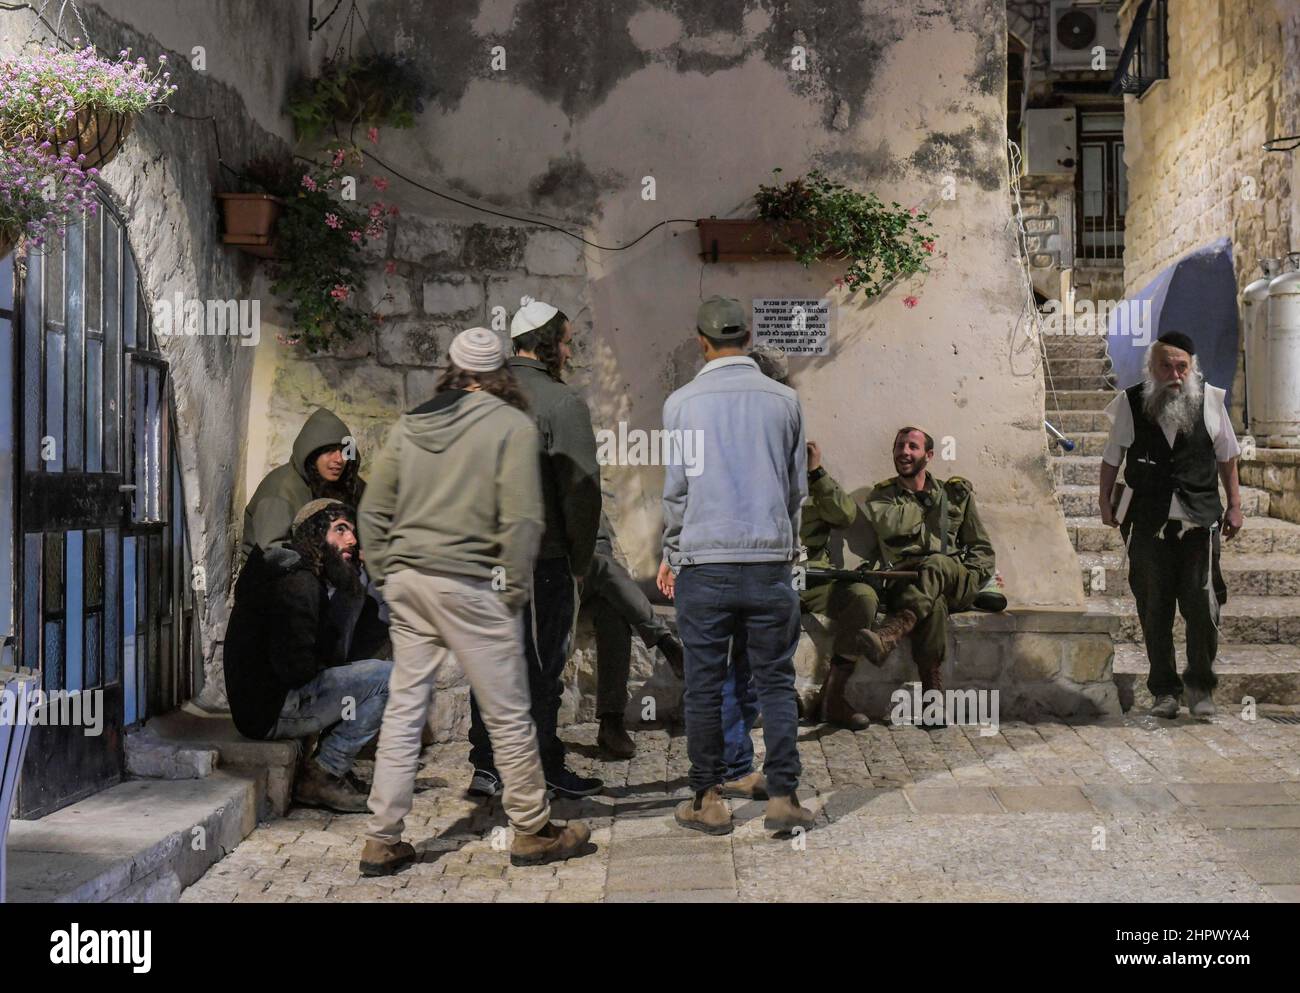 Men, Old City alleys, Safed, Israel Stock Photo